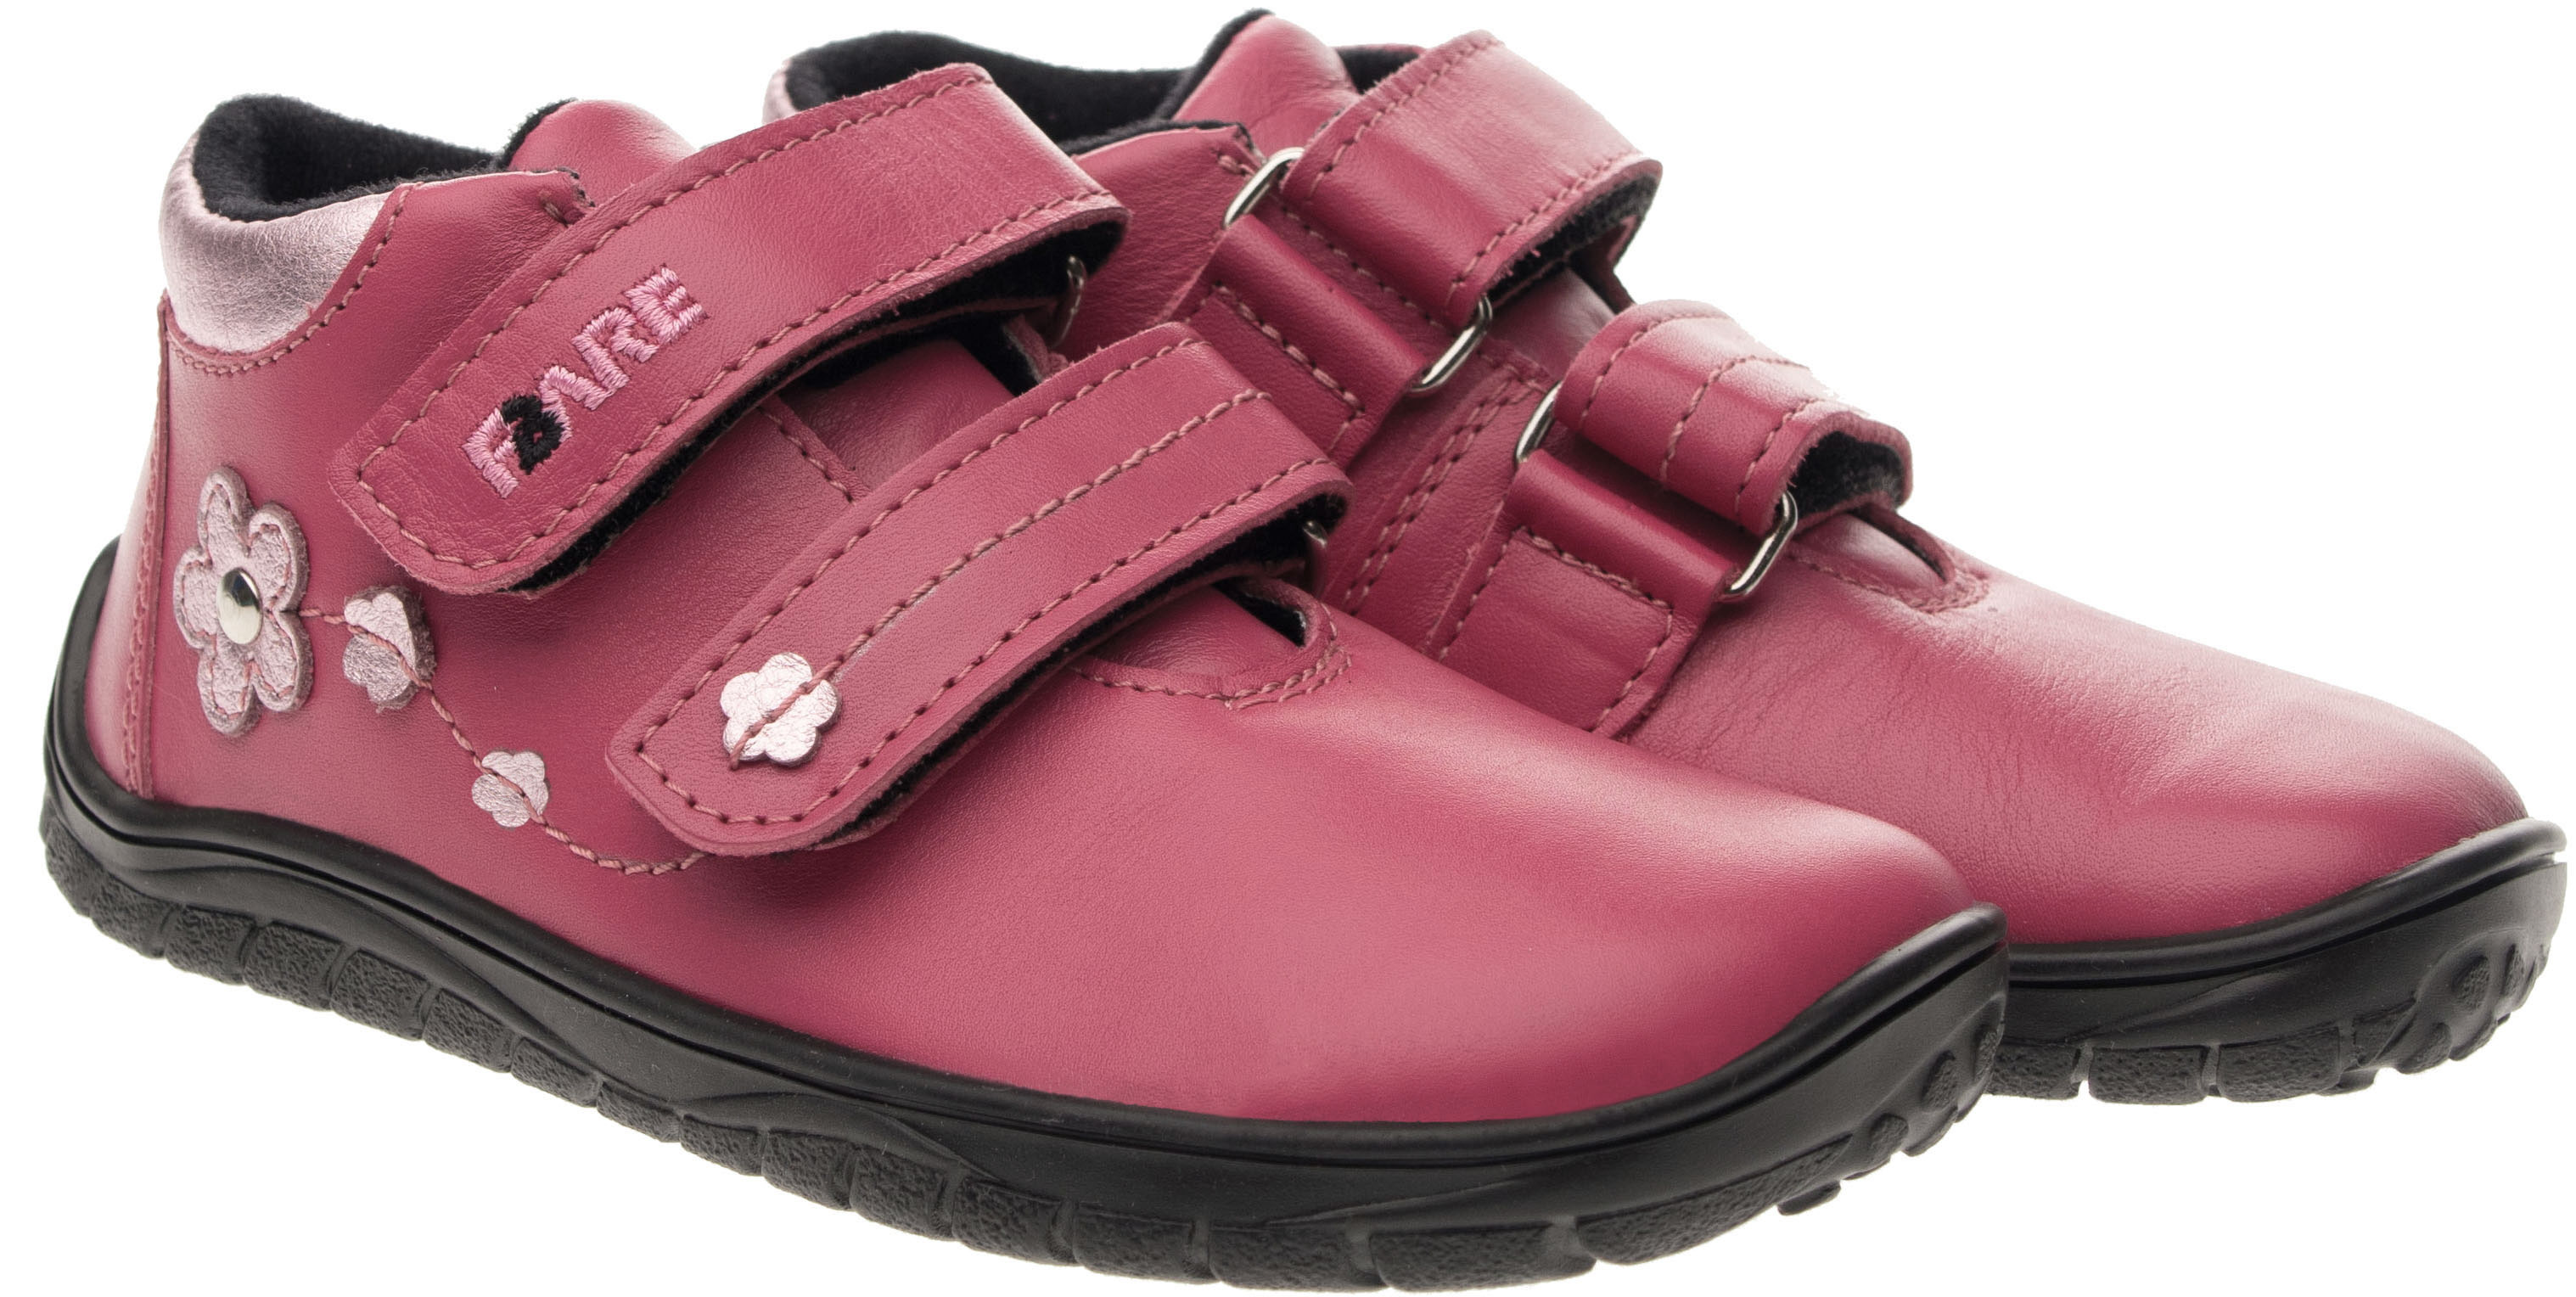 FARE BARE celoroční boty s membránou B5516152 Velikost obuvi: 32